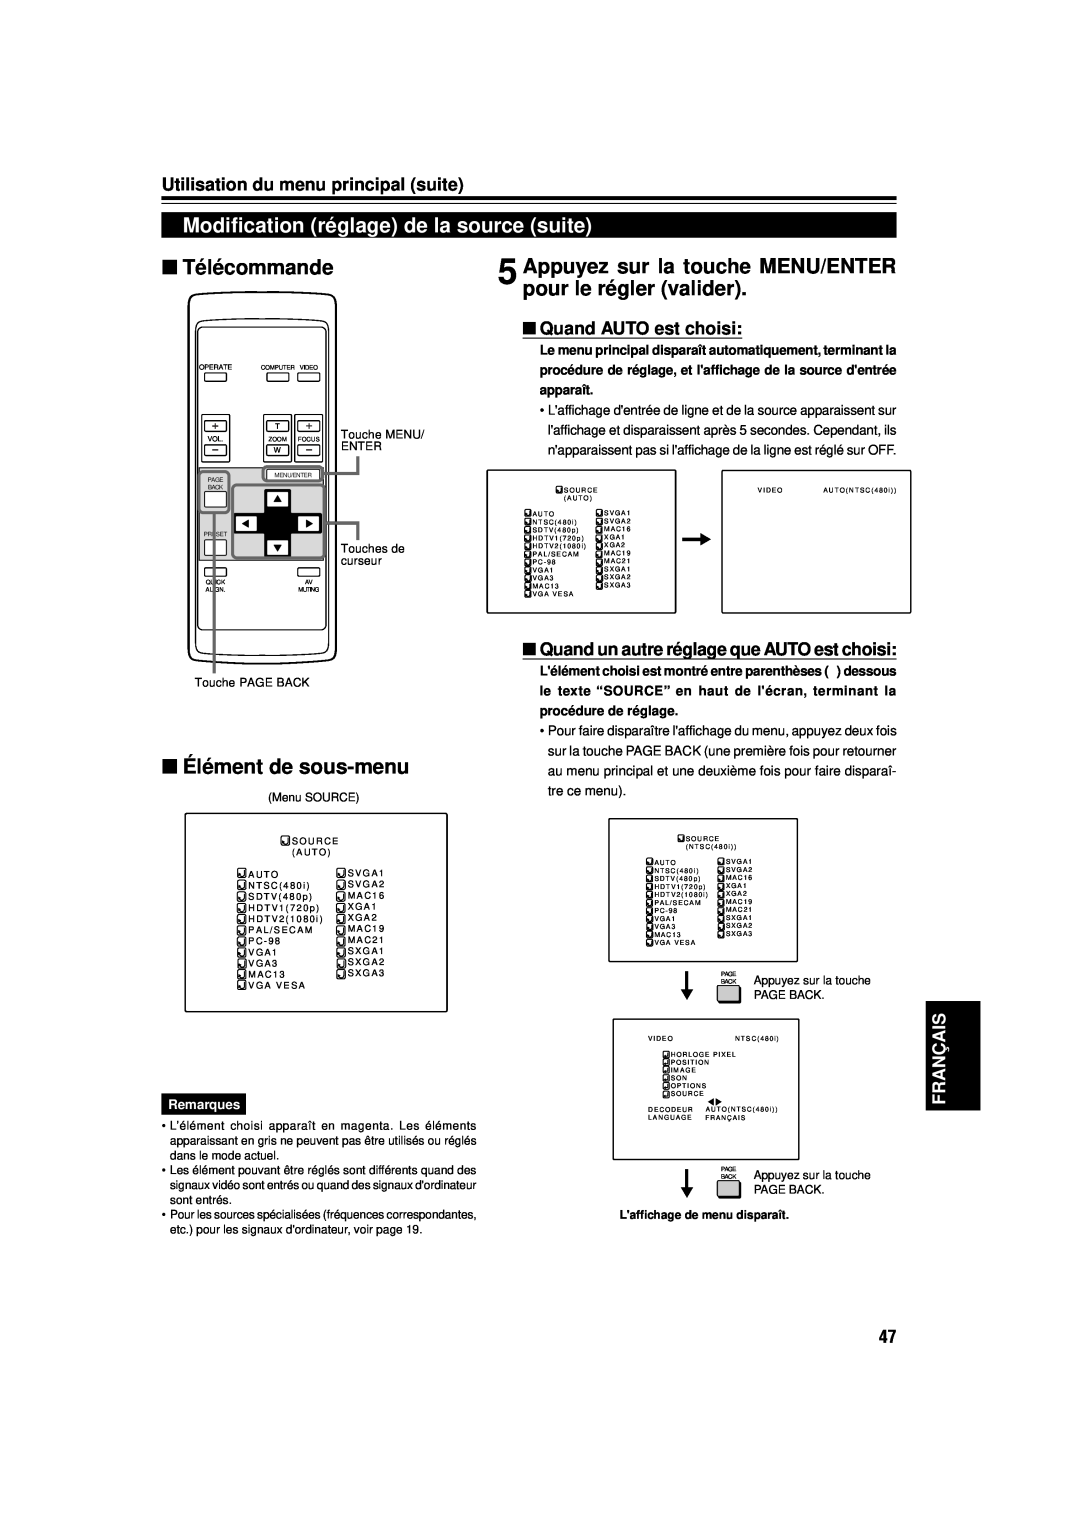 JVC DLA-M15U Modification réglage de la source suite, Appuyez sur la touche MENU/ENTER pour le régler valider, Français 